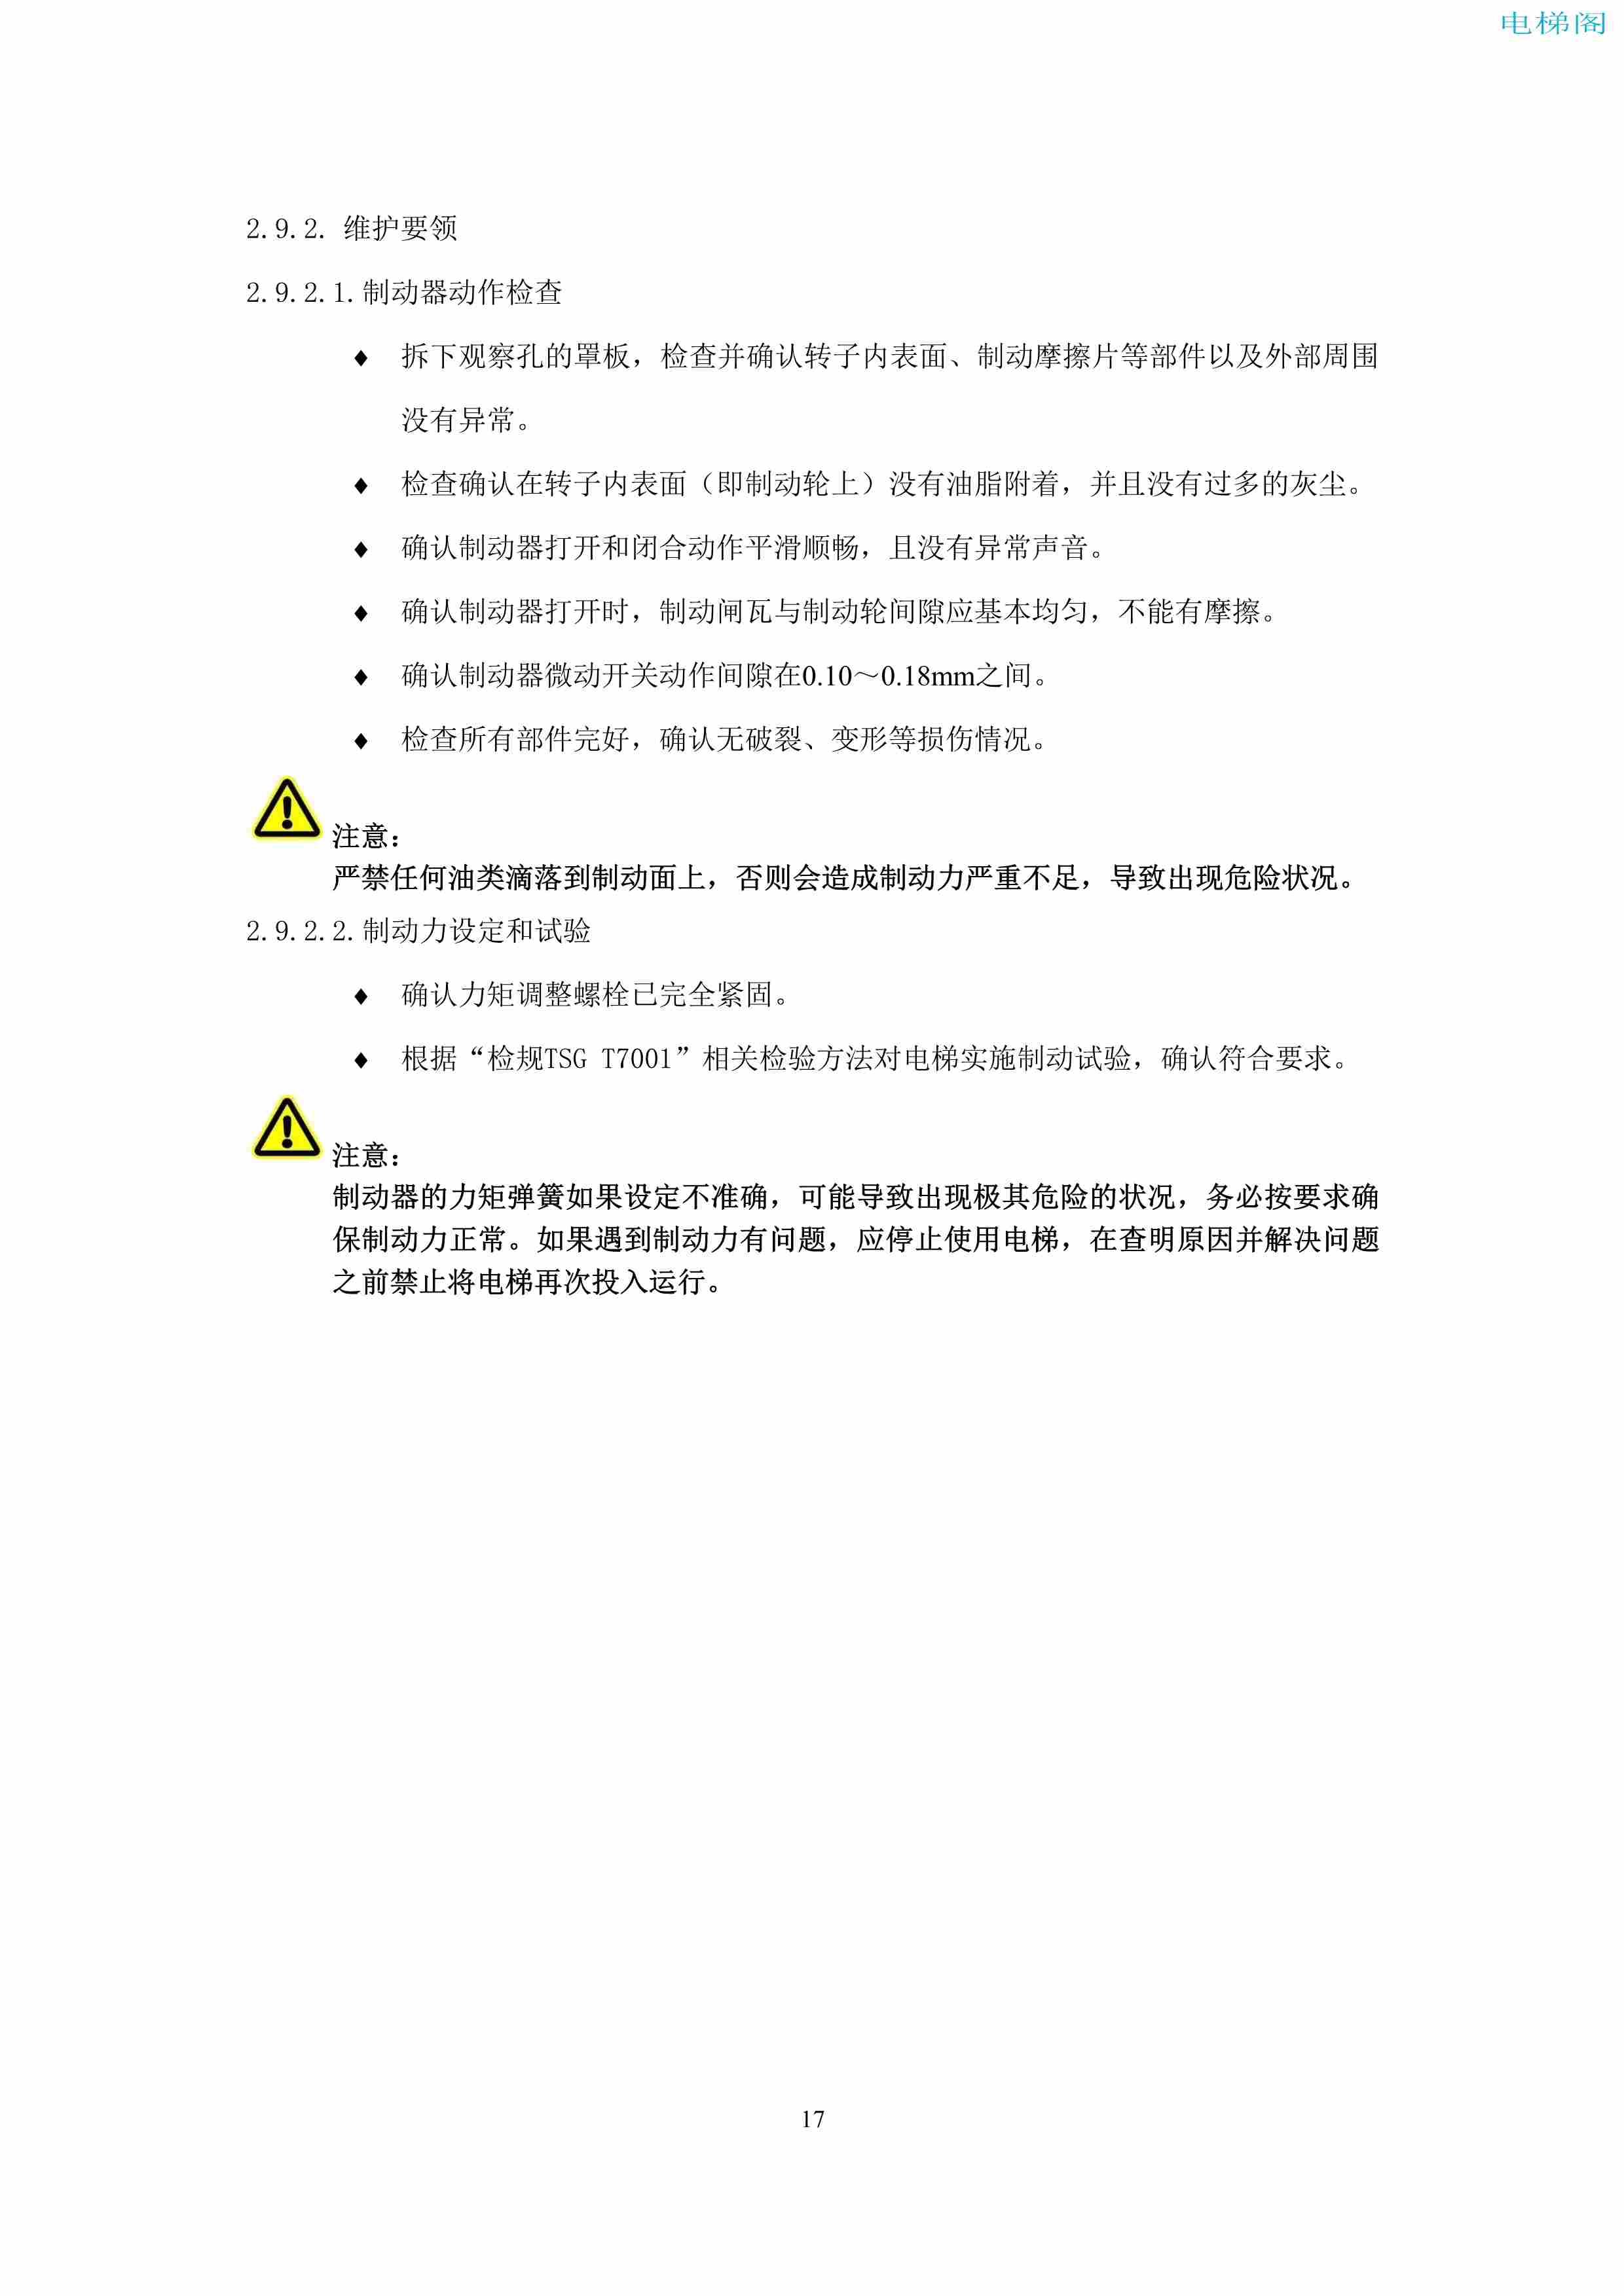 上海三菱电梯有限公司电梯制动器维护作业要领汇编_19.jpg